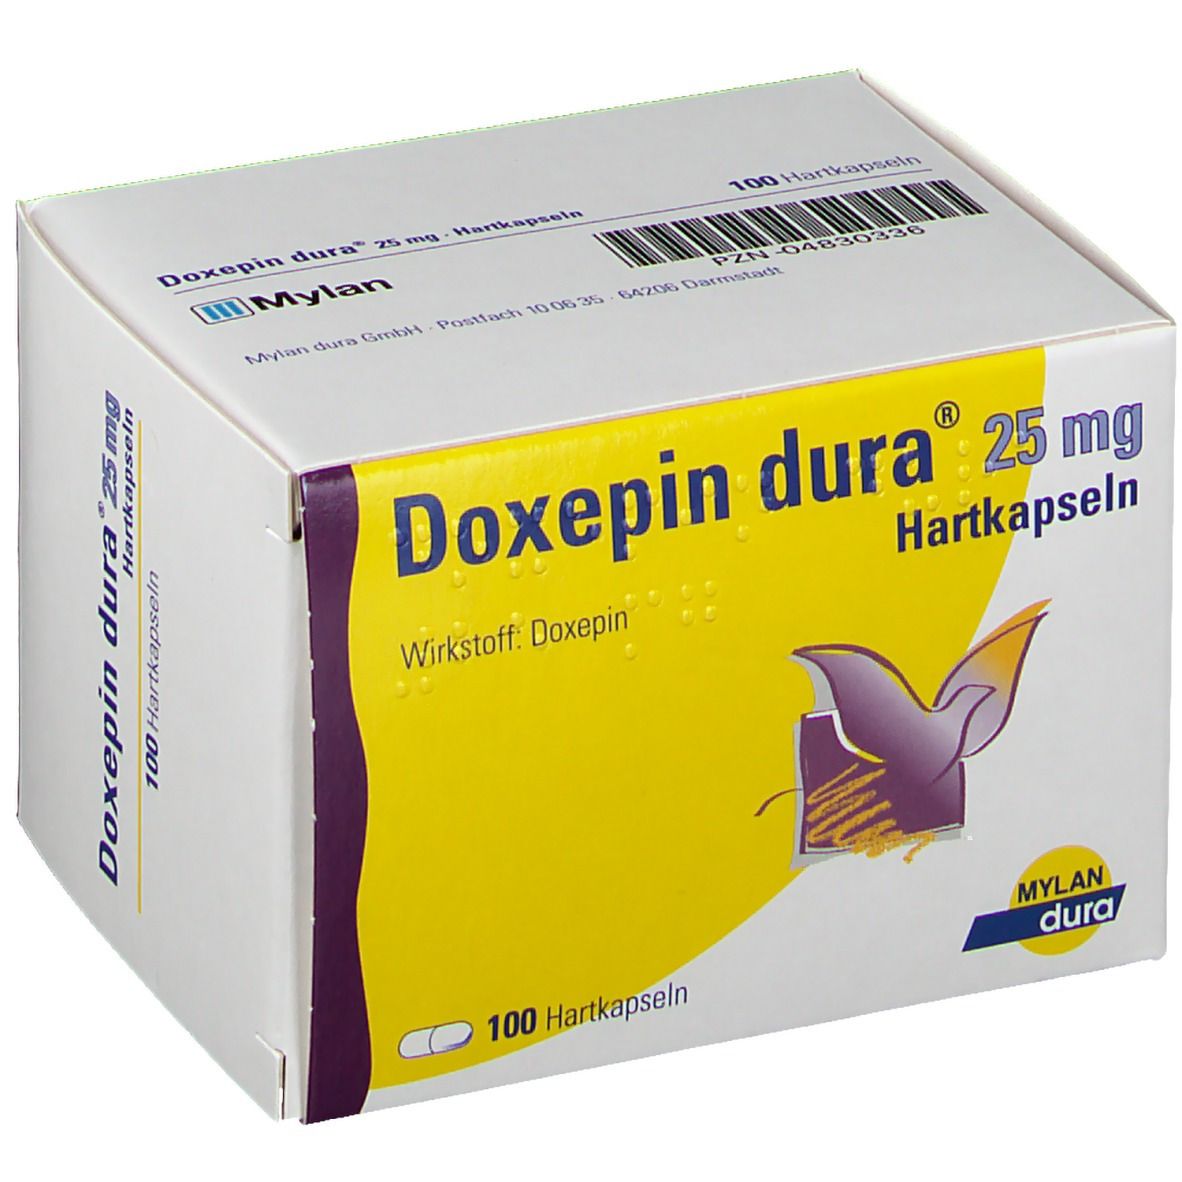 Doxepin dura® 25 mg